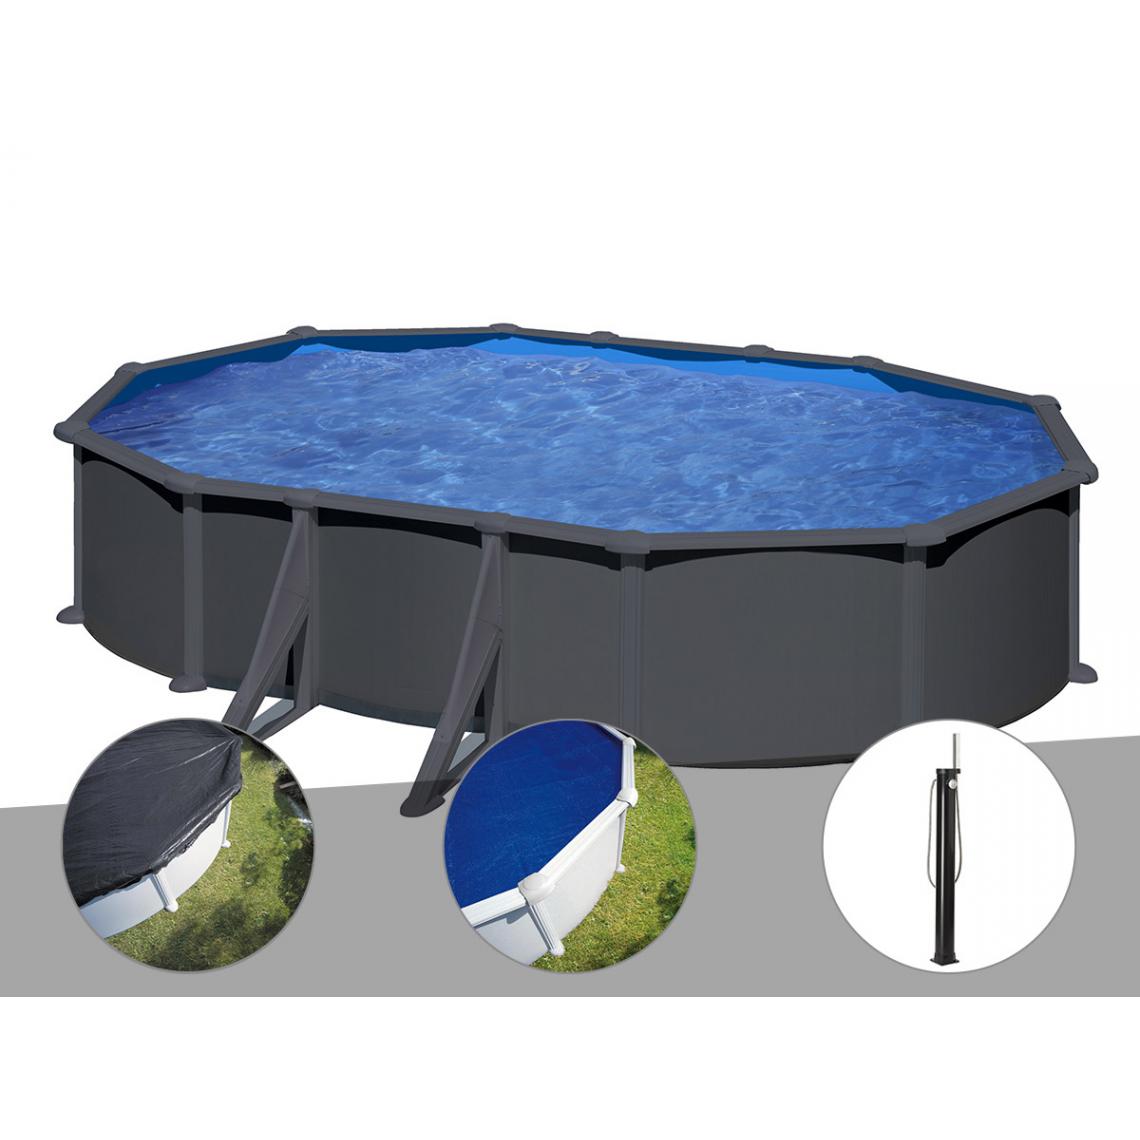 Gre - Kit piscine acier gris anthracite Gré Juni ovale 6,34 x 3,99 x 1,32 m + Bâche d'hivernage + Bâche à bulles + Douche - Piscines acier et résine